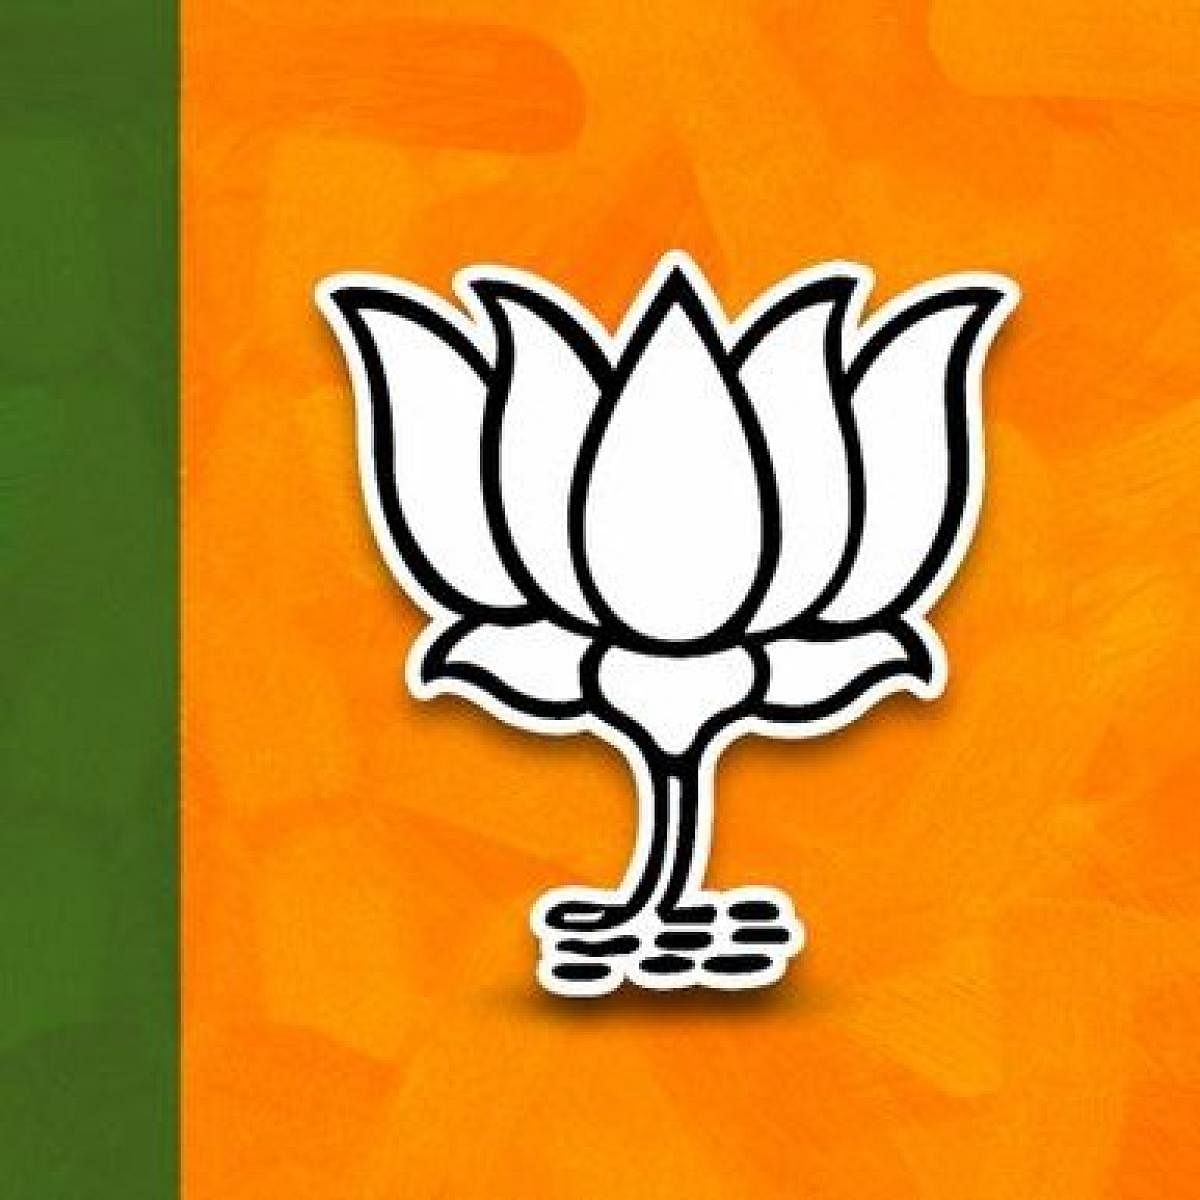 BJP logo (File Image)